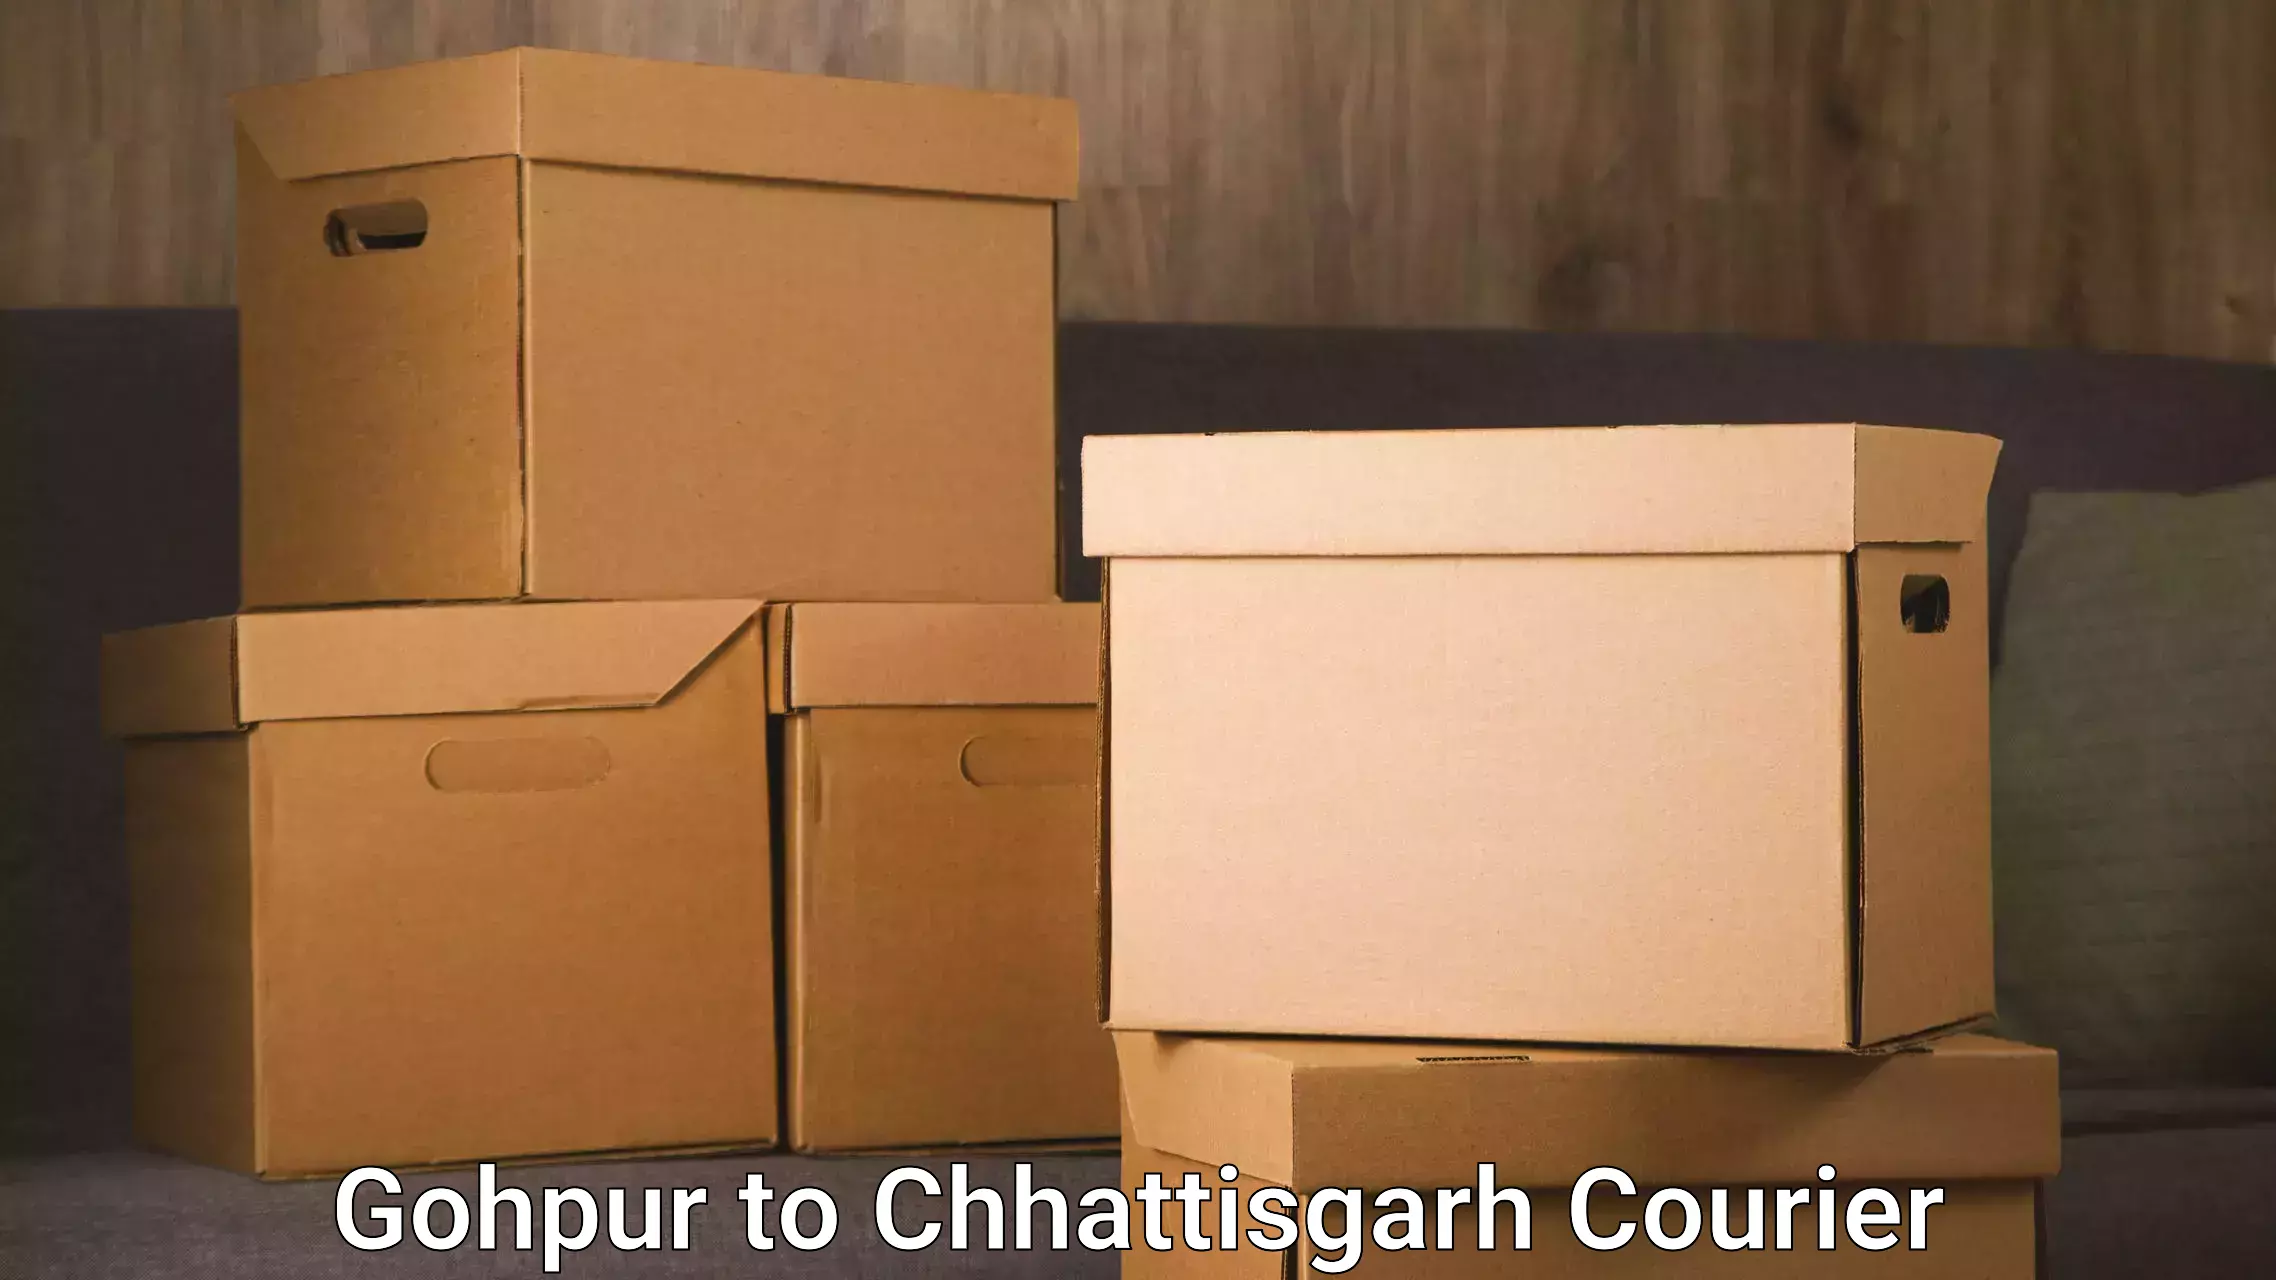 Logistics service provider Gohpur to Chhattisgarh